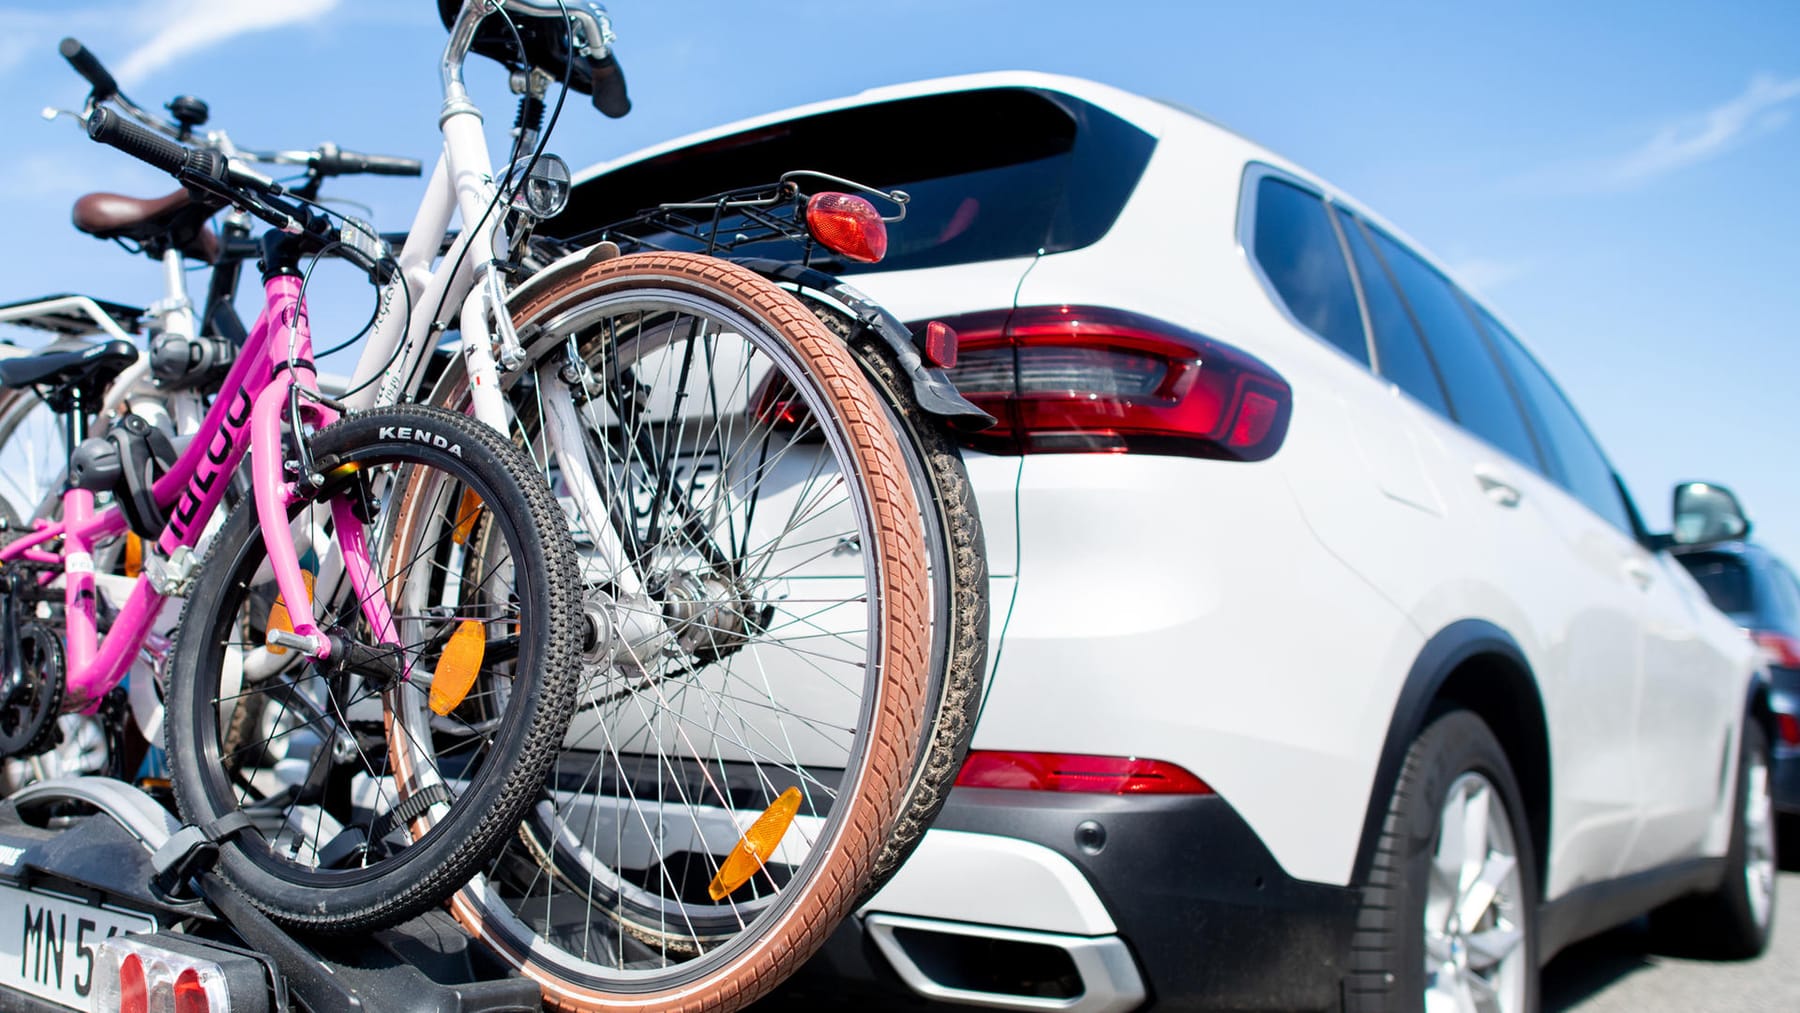 Fahrradträger am Auto: Kennzeichen, Last, Breite, Co. – diese Regeln gelten